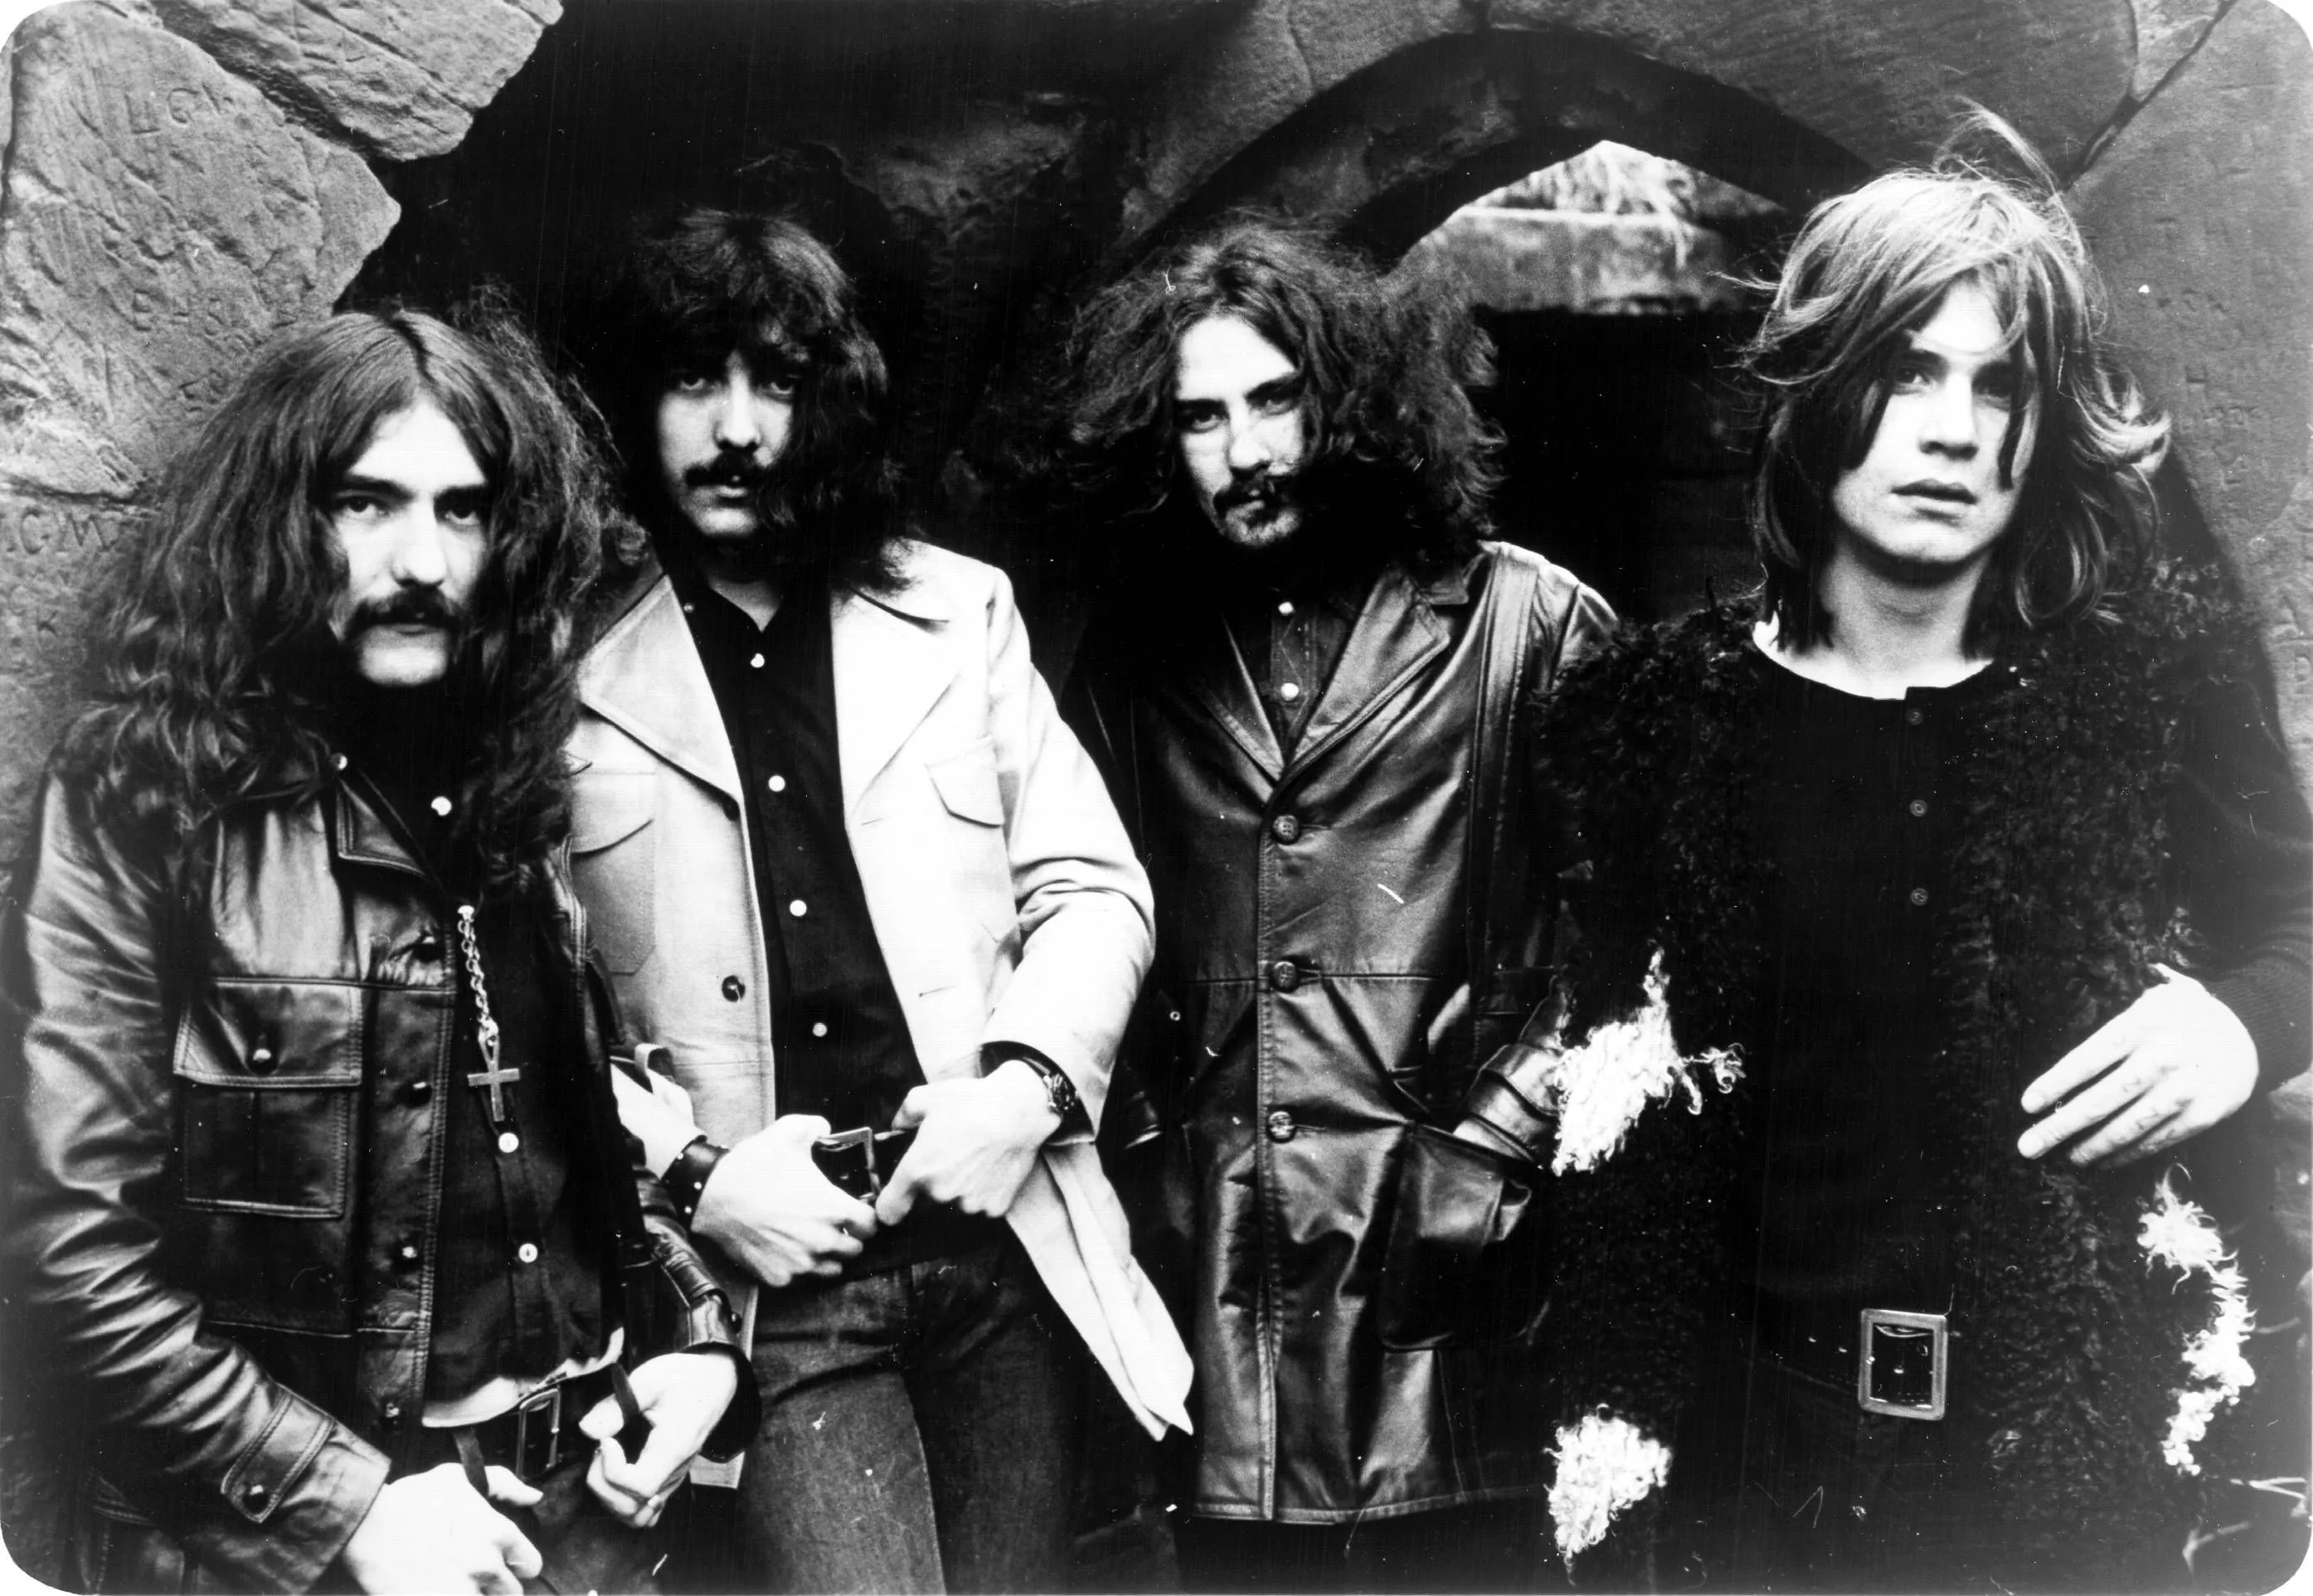 ERSÄTTARNA: Black Sabbath del 1 – hur ersätter man en frontman?